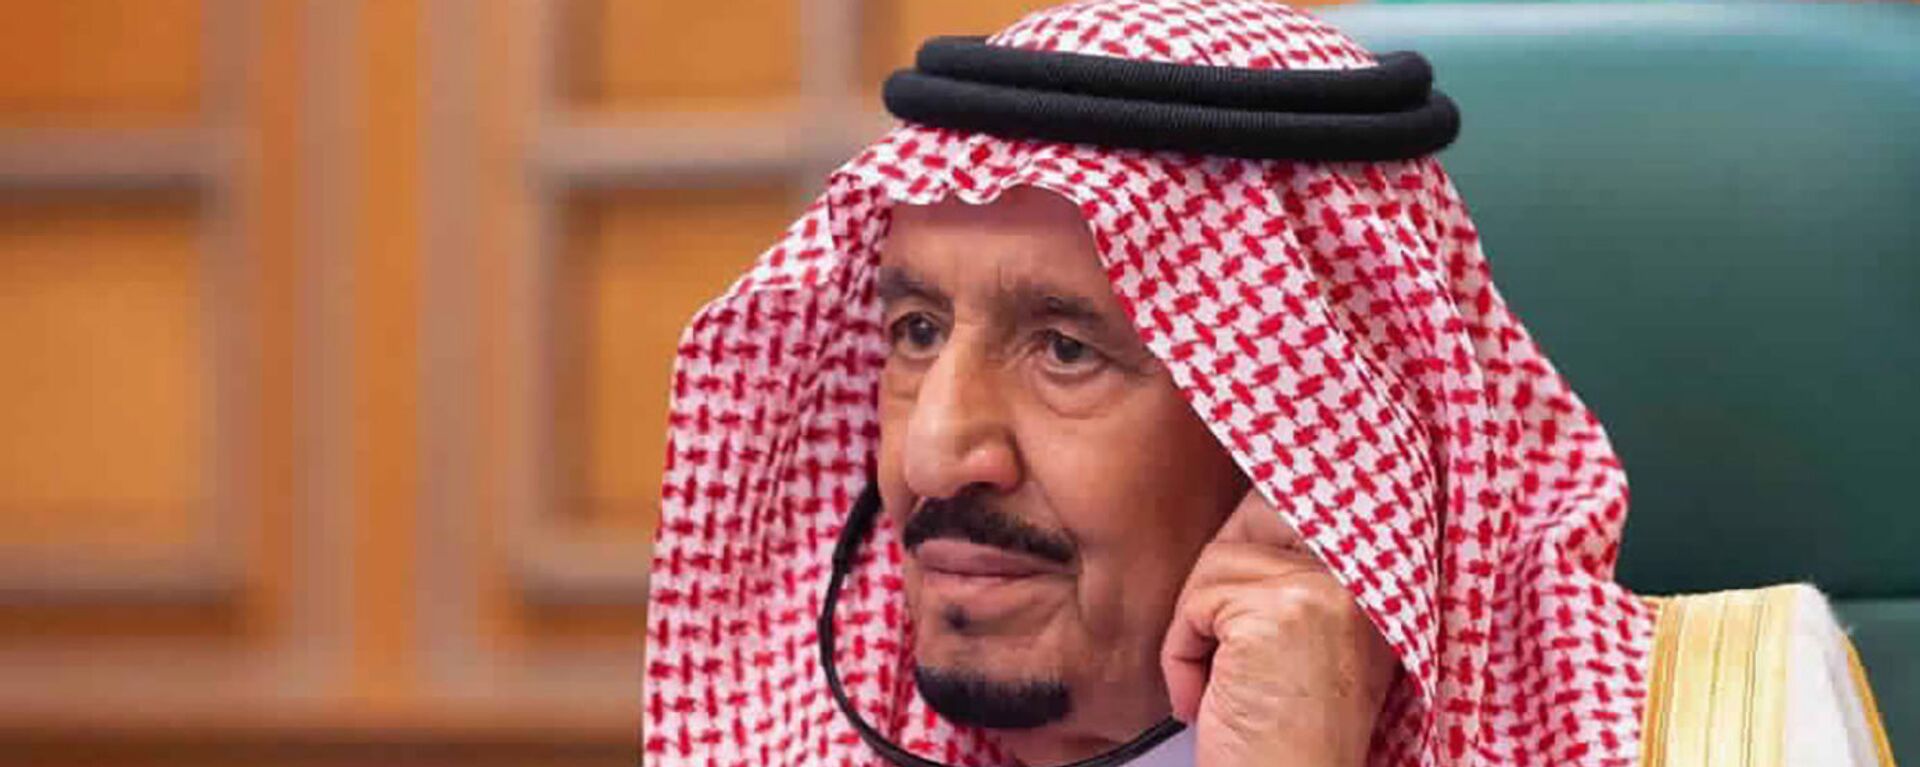 Король Саудовской Аравии Салман возглавляет видеозвонок мировых лидеров из G20 из своего офиса в Эр-Рияде (6 марта 2020). Саудовская Аравия - Sputnik Армения, 1920, 21.09.2020